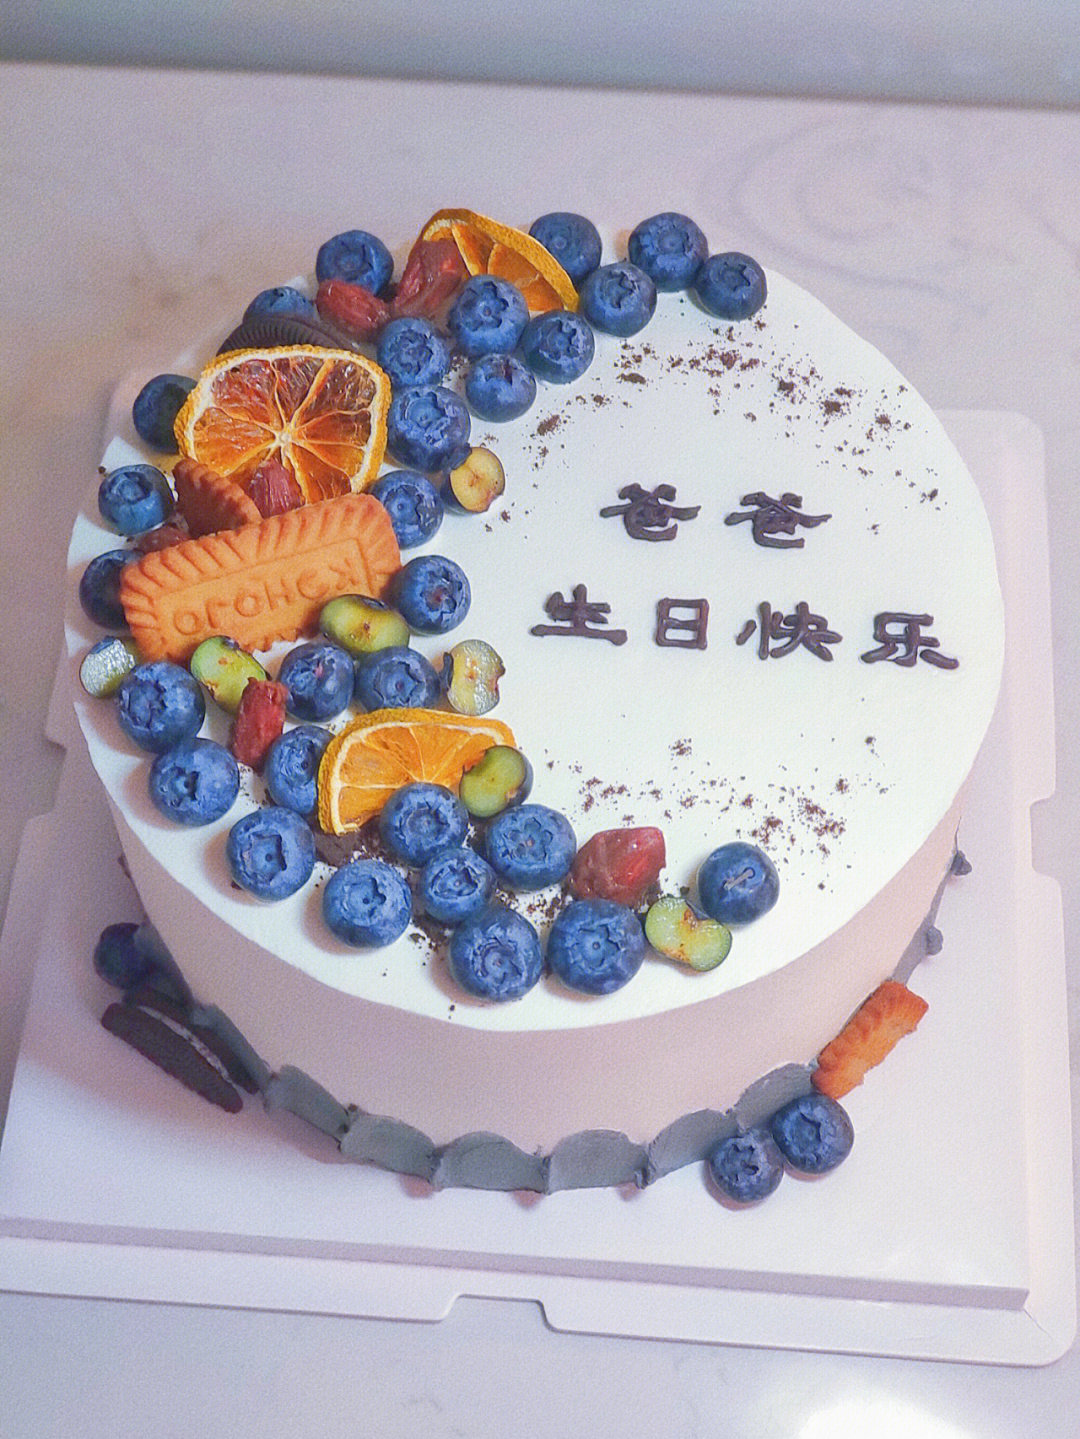 八寸水果爸爸生日蛋糕